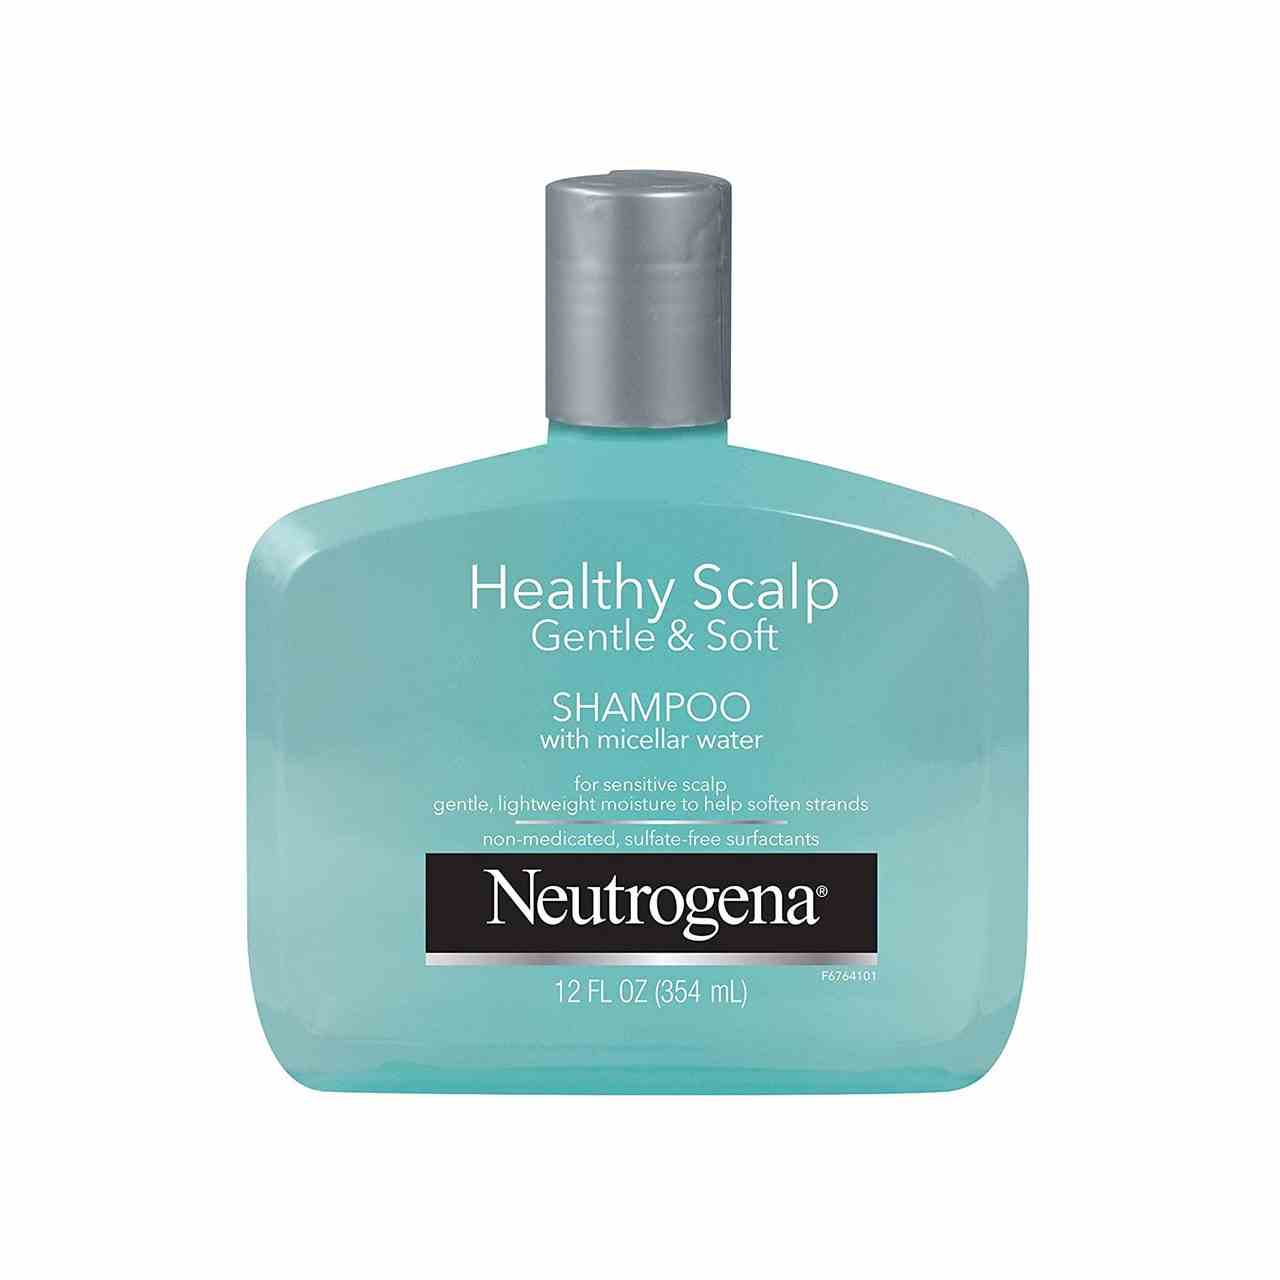 Neutrogena Gentle & Soft Healthy Scalp Shampoo for Sensitive Scalp breite mintfarbene Flasche Shampoo mit grauer Kappe auf weißem Hintergrund